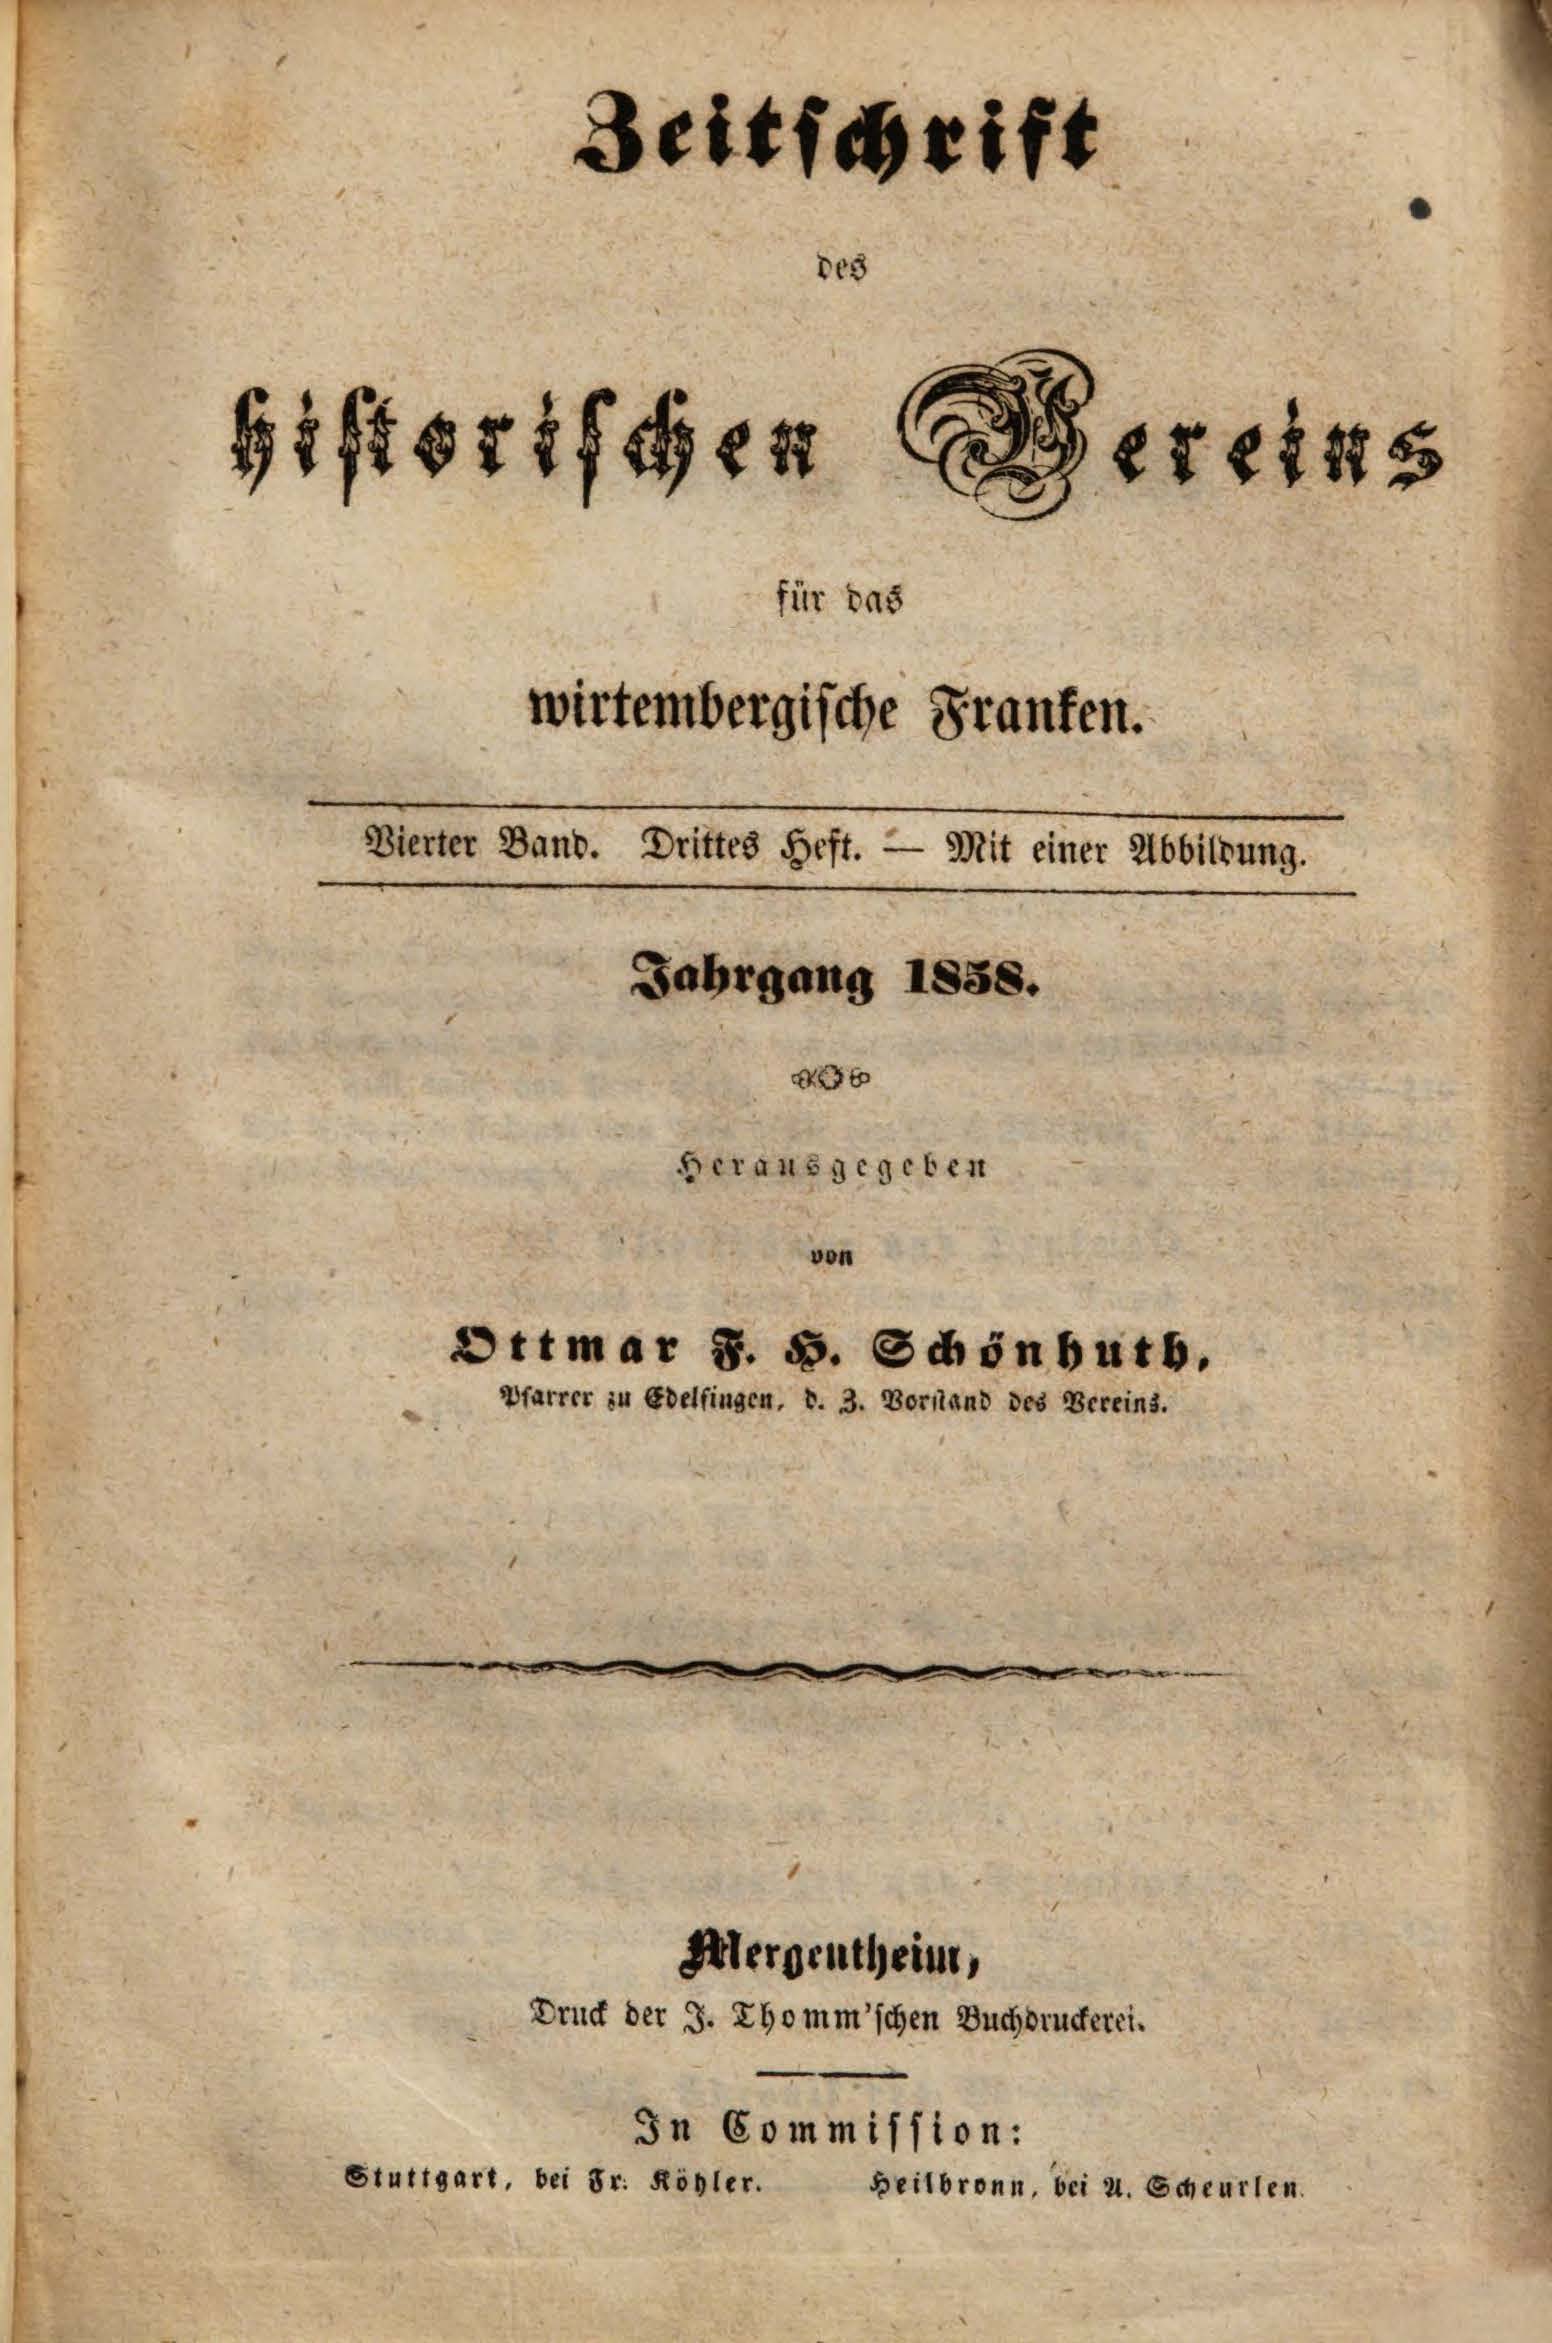                     Ansehen Bd. 4 Nr. 3 (1858): Zeitschrift des Historischen Vereins für das Württembergische Franken
                